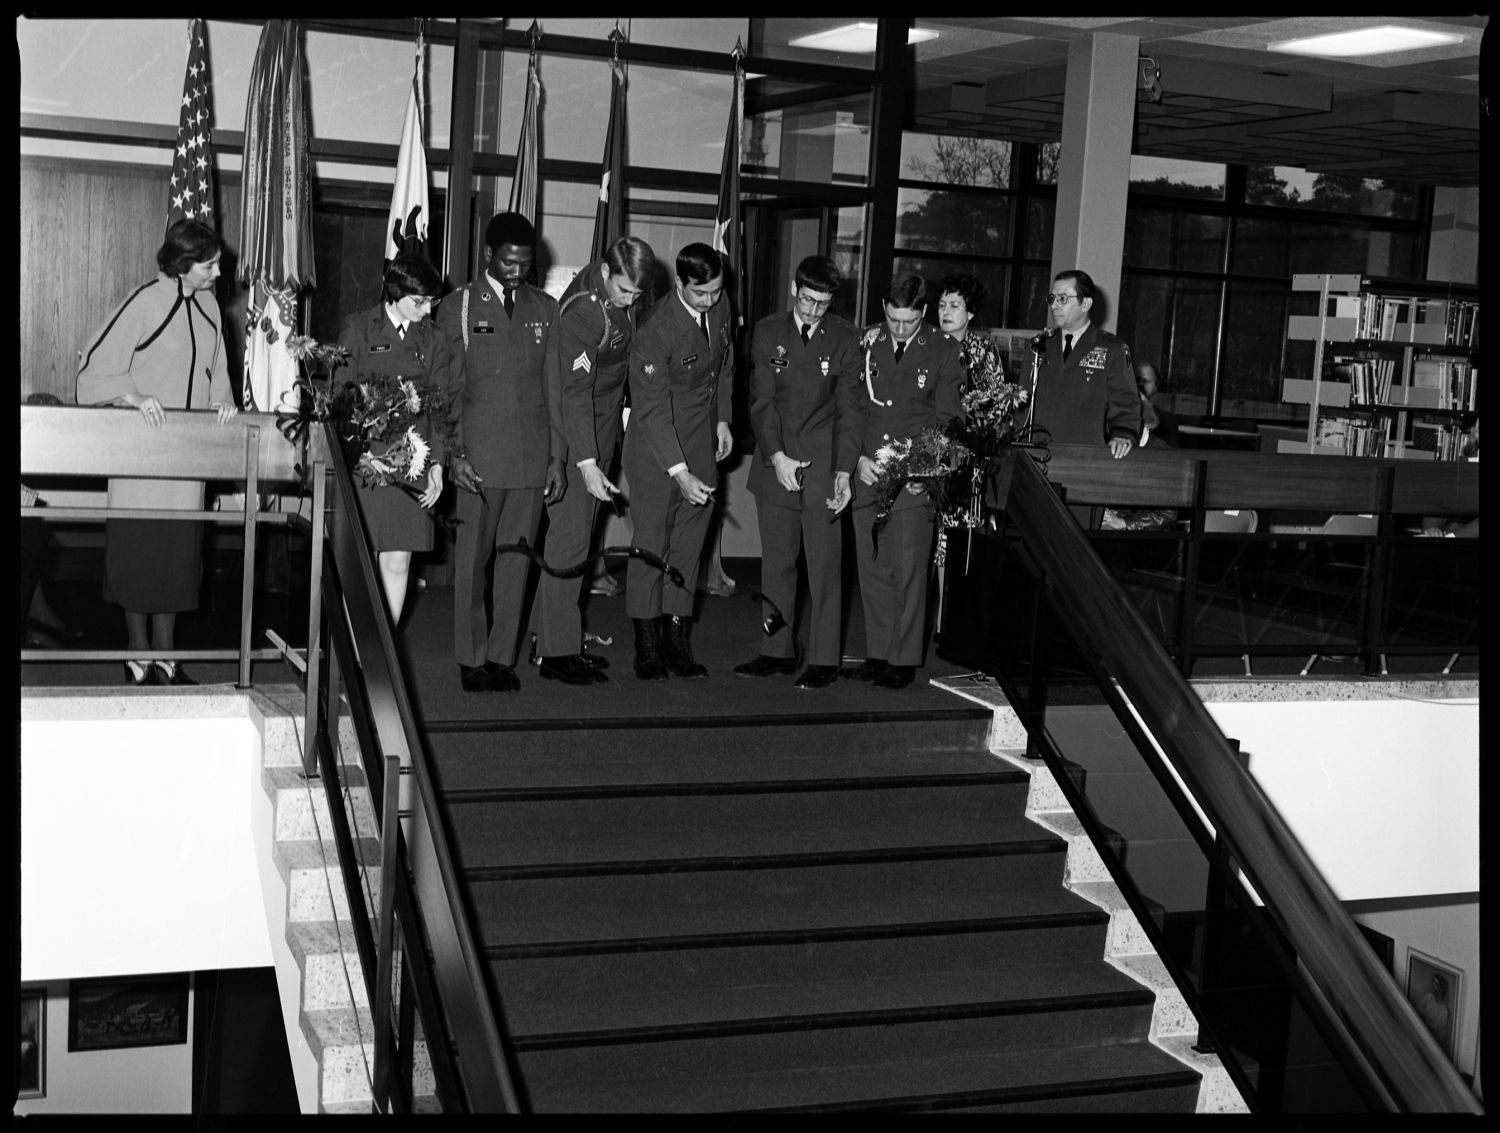 S/w-Fotografie: Eröffnung der Bibliothek der U.S. Army Berlin Brigade in der Taylorstraße in Berlin-Dahlem